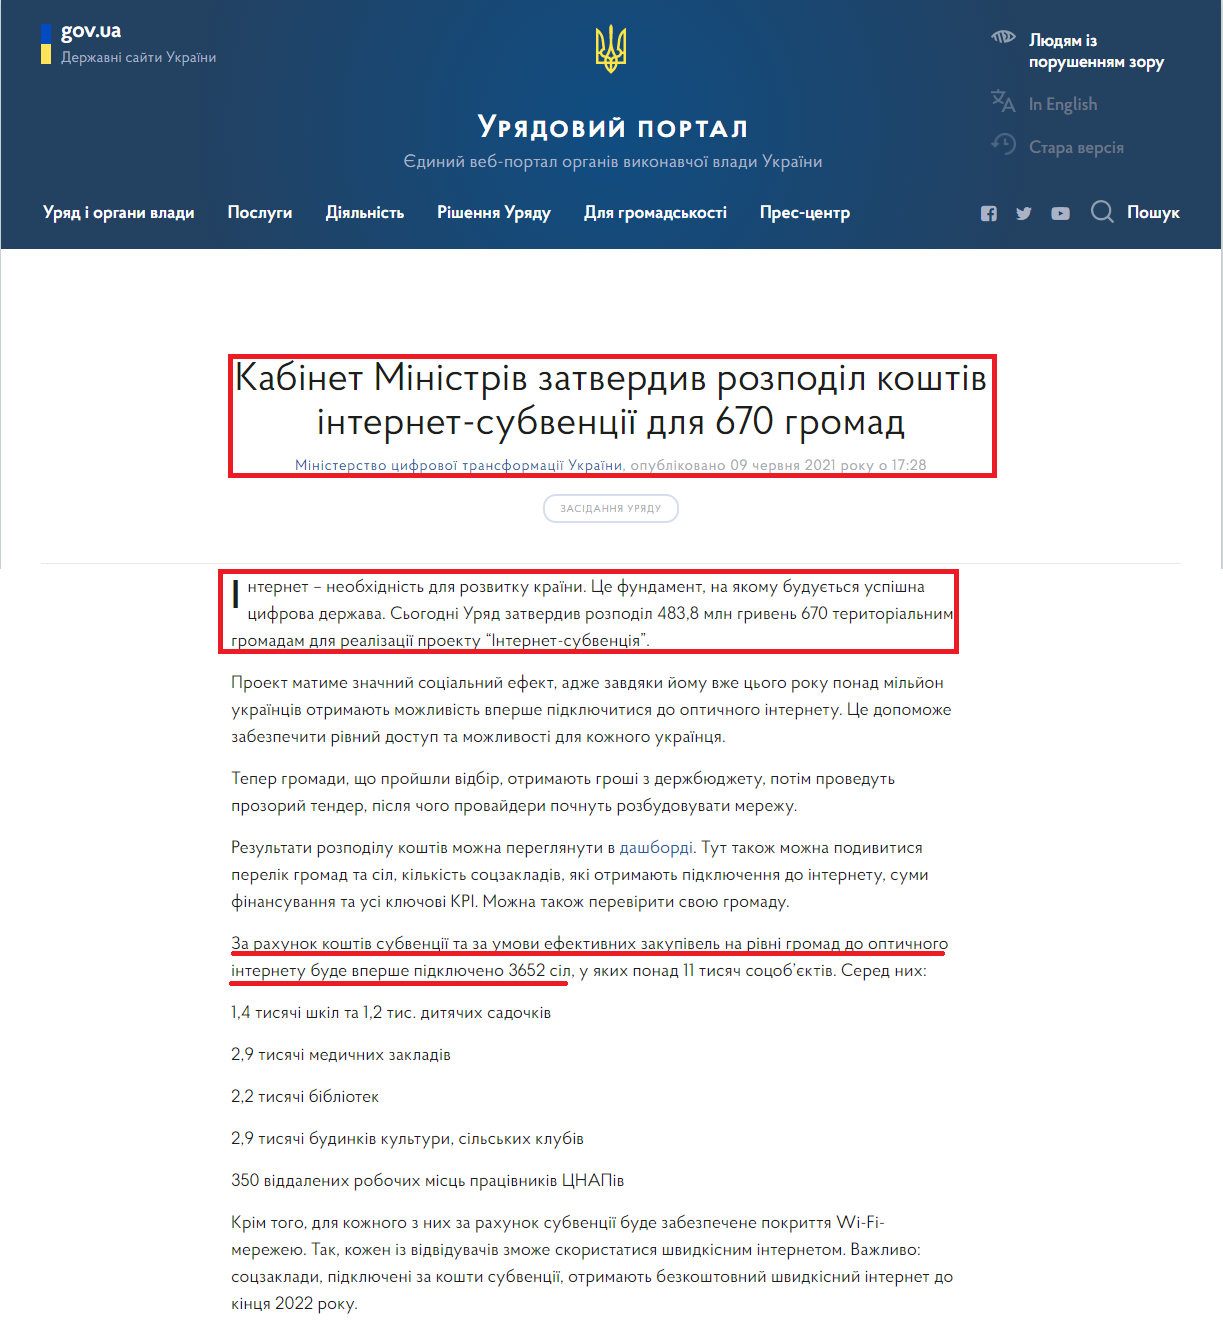 https://www.kmu.gov.ua/news/kabinet-ministriv-zatverdiv-rozpodil-koshtiv-internet-subvenciyi-dlya-670-gromad